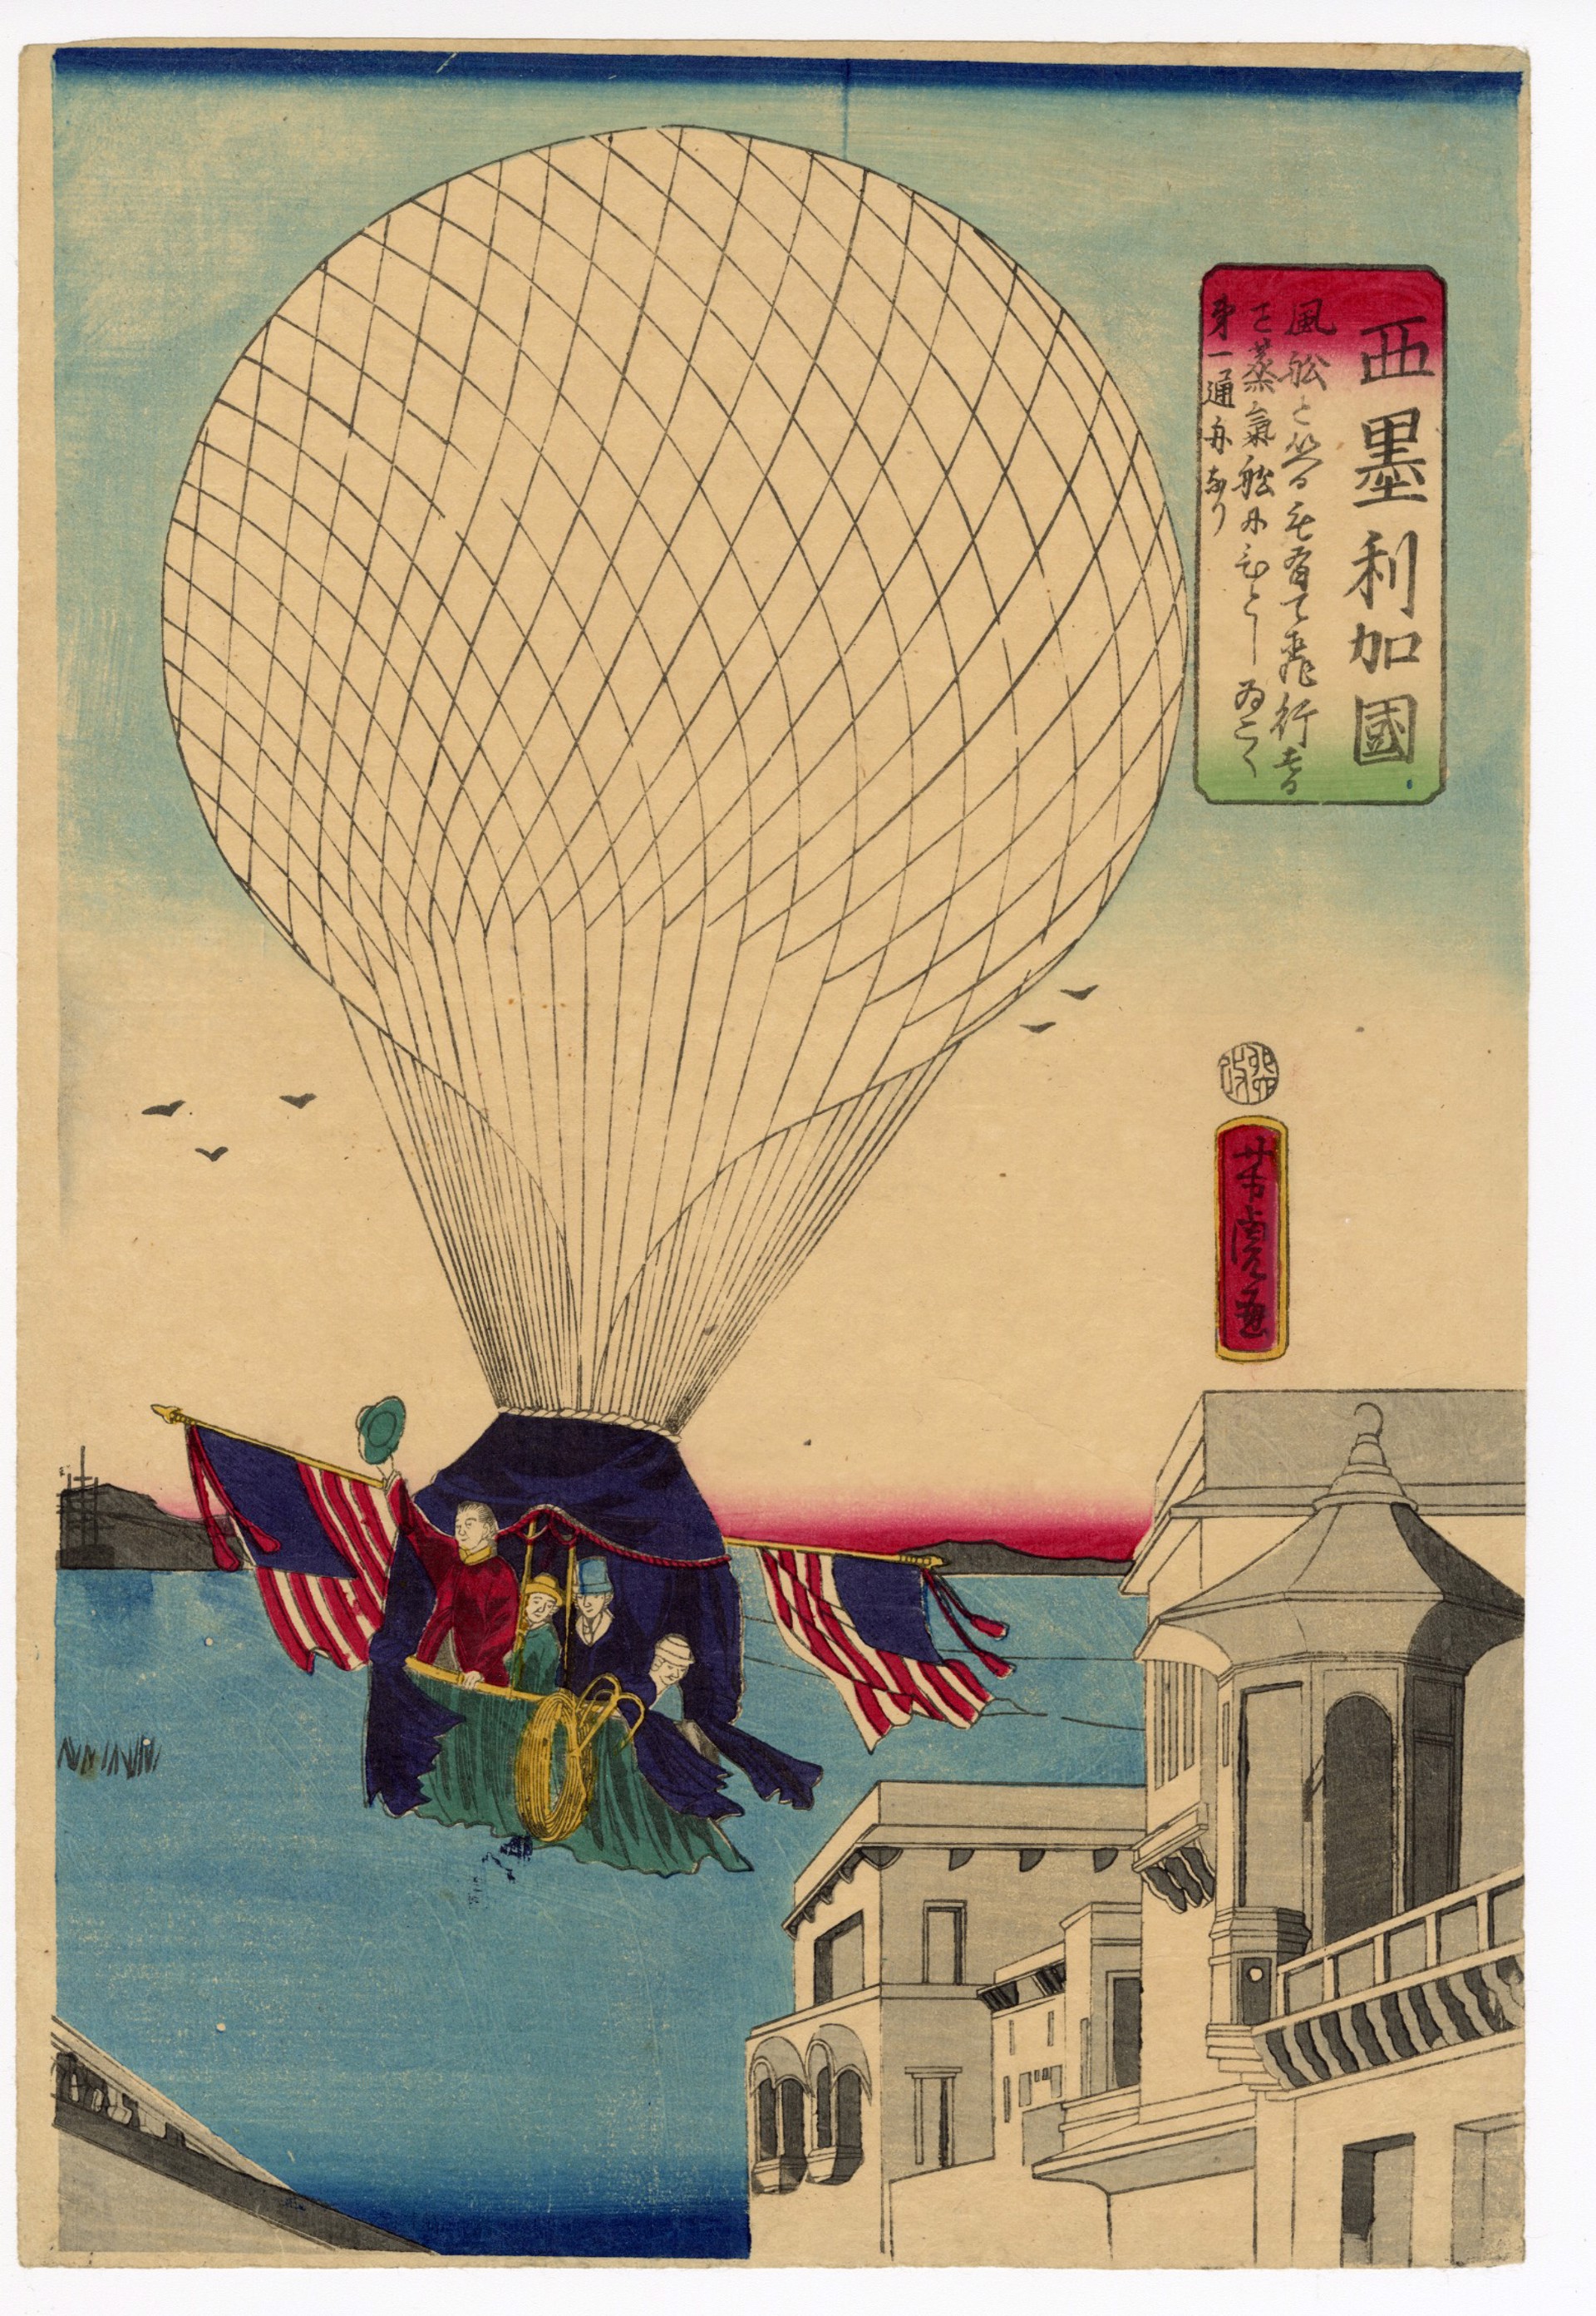 America: Enjoying Hot Air Balloons by Yoshitora